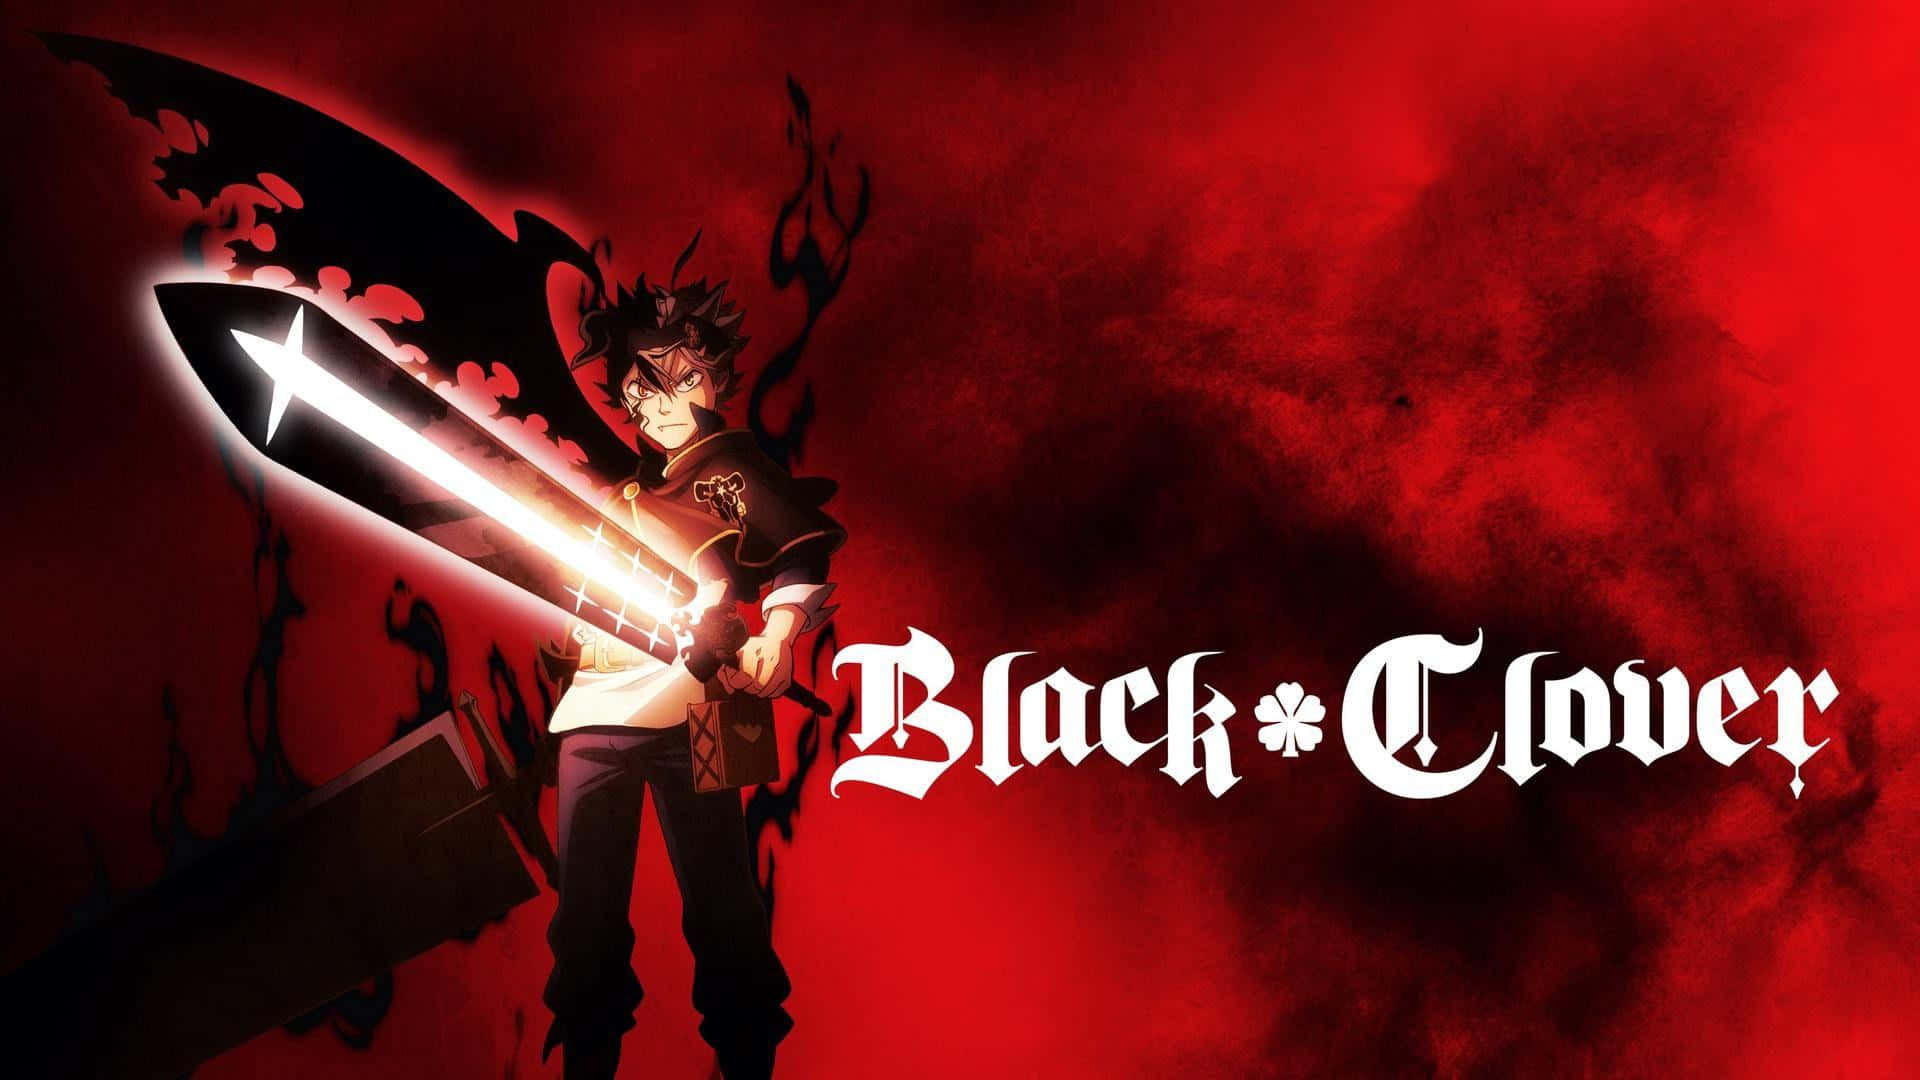 Asta Black Clover Anime Promotional Art Wallpaper